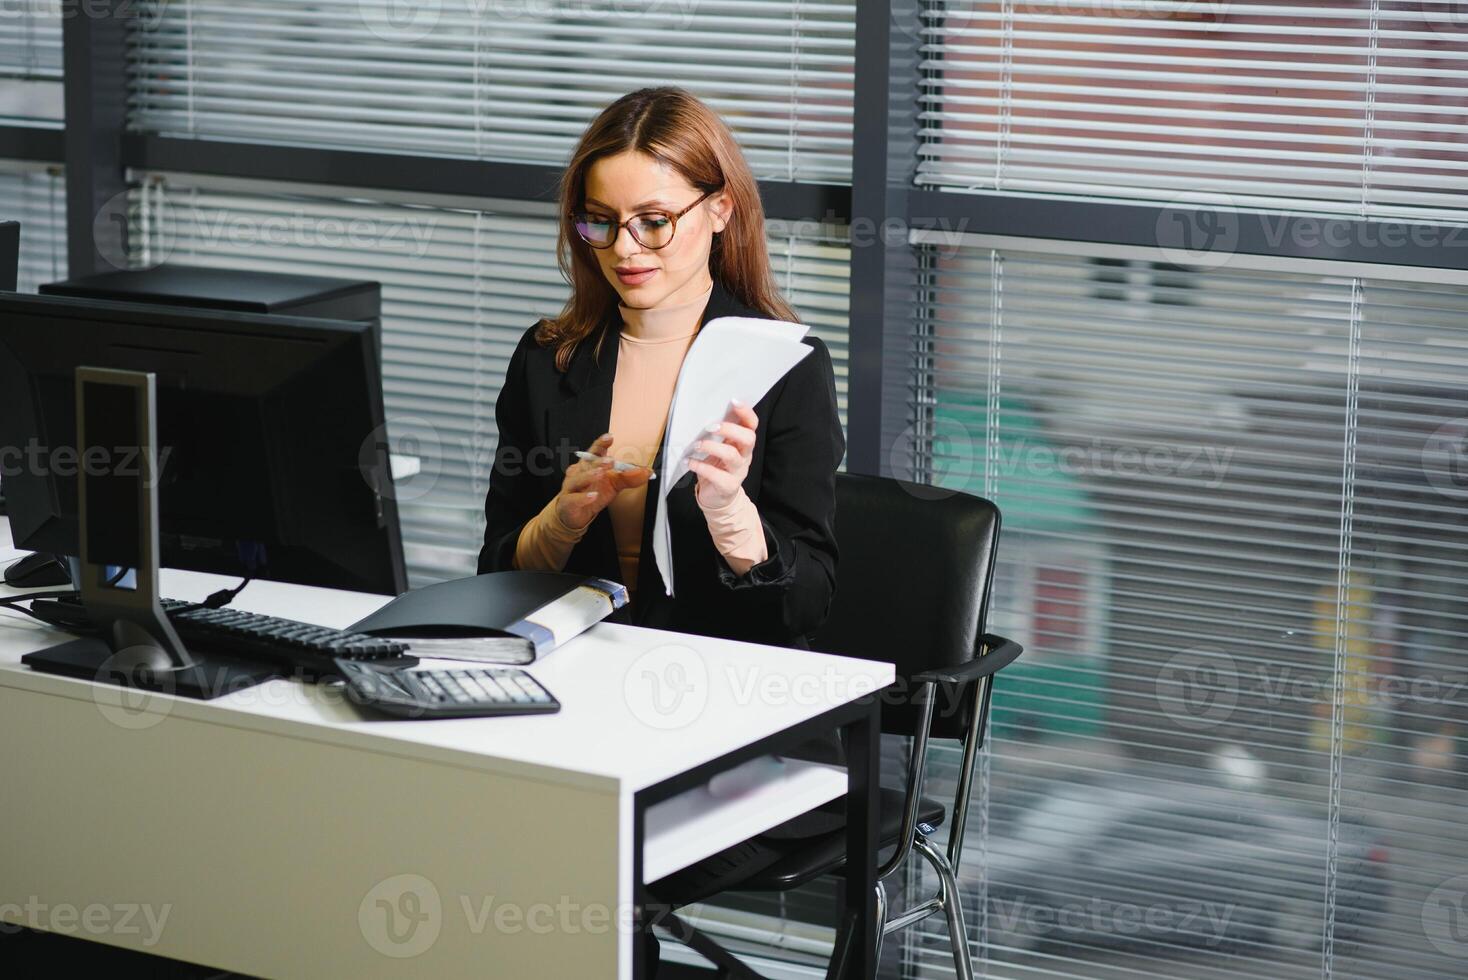 Söt, trevlig, söt, perfekt kvinna Sammanträde på henne skrivbord på läder stol i arbete station, bär glasögon, formell klädsel, har bärbar dator och anteckningsbok på de tabell foto